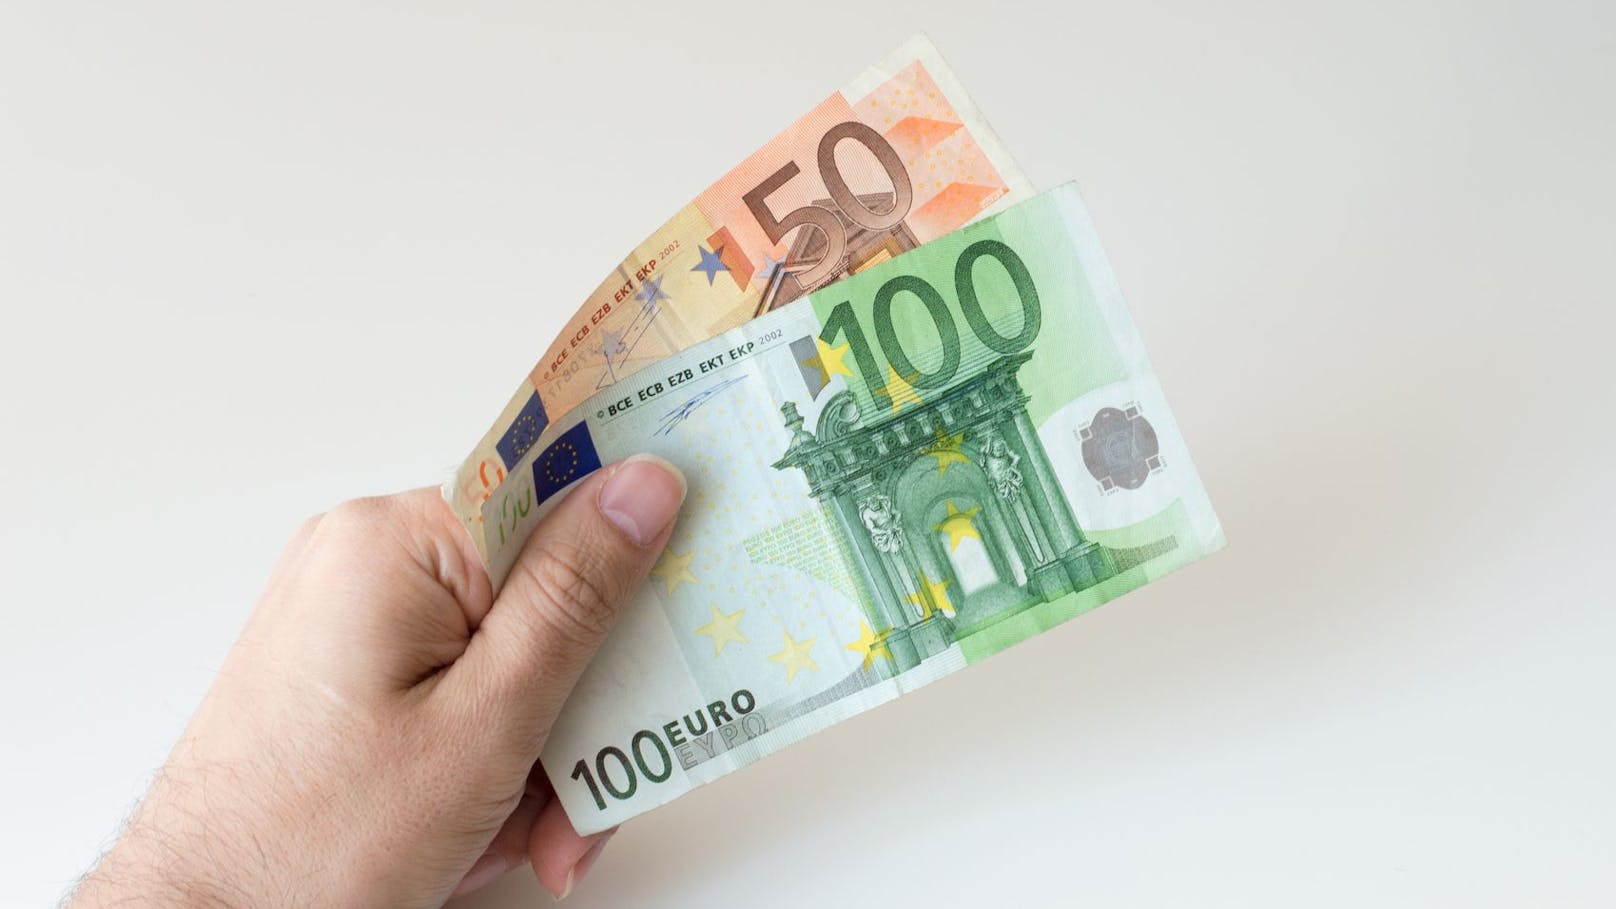 Einmalig 150 Euro werden für den Teuerungsausgleich an bedürftige Bürger zugeschossen.